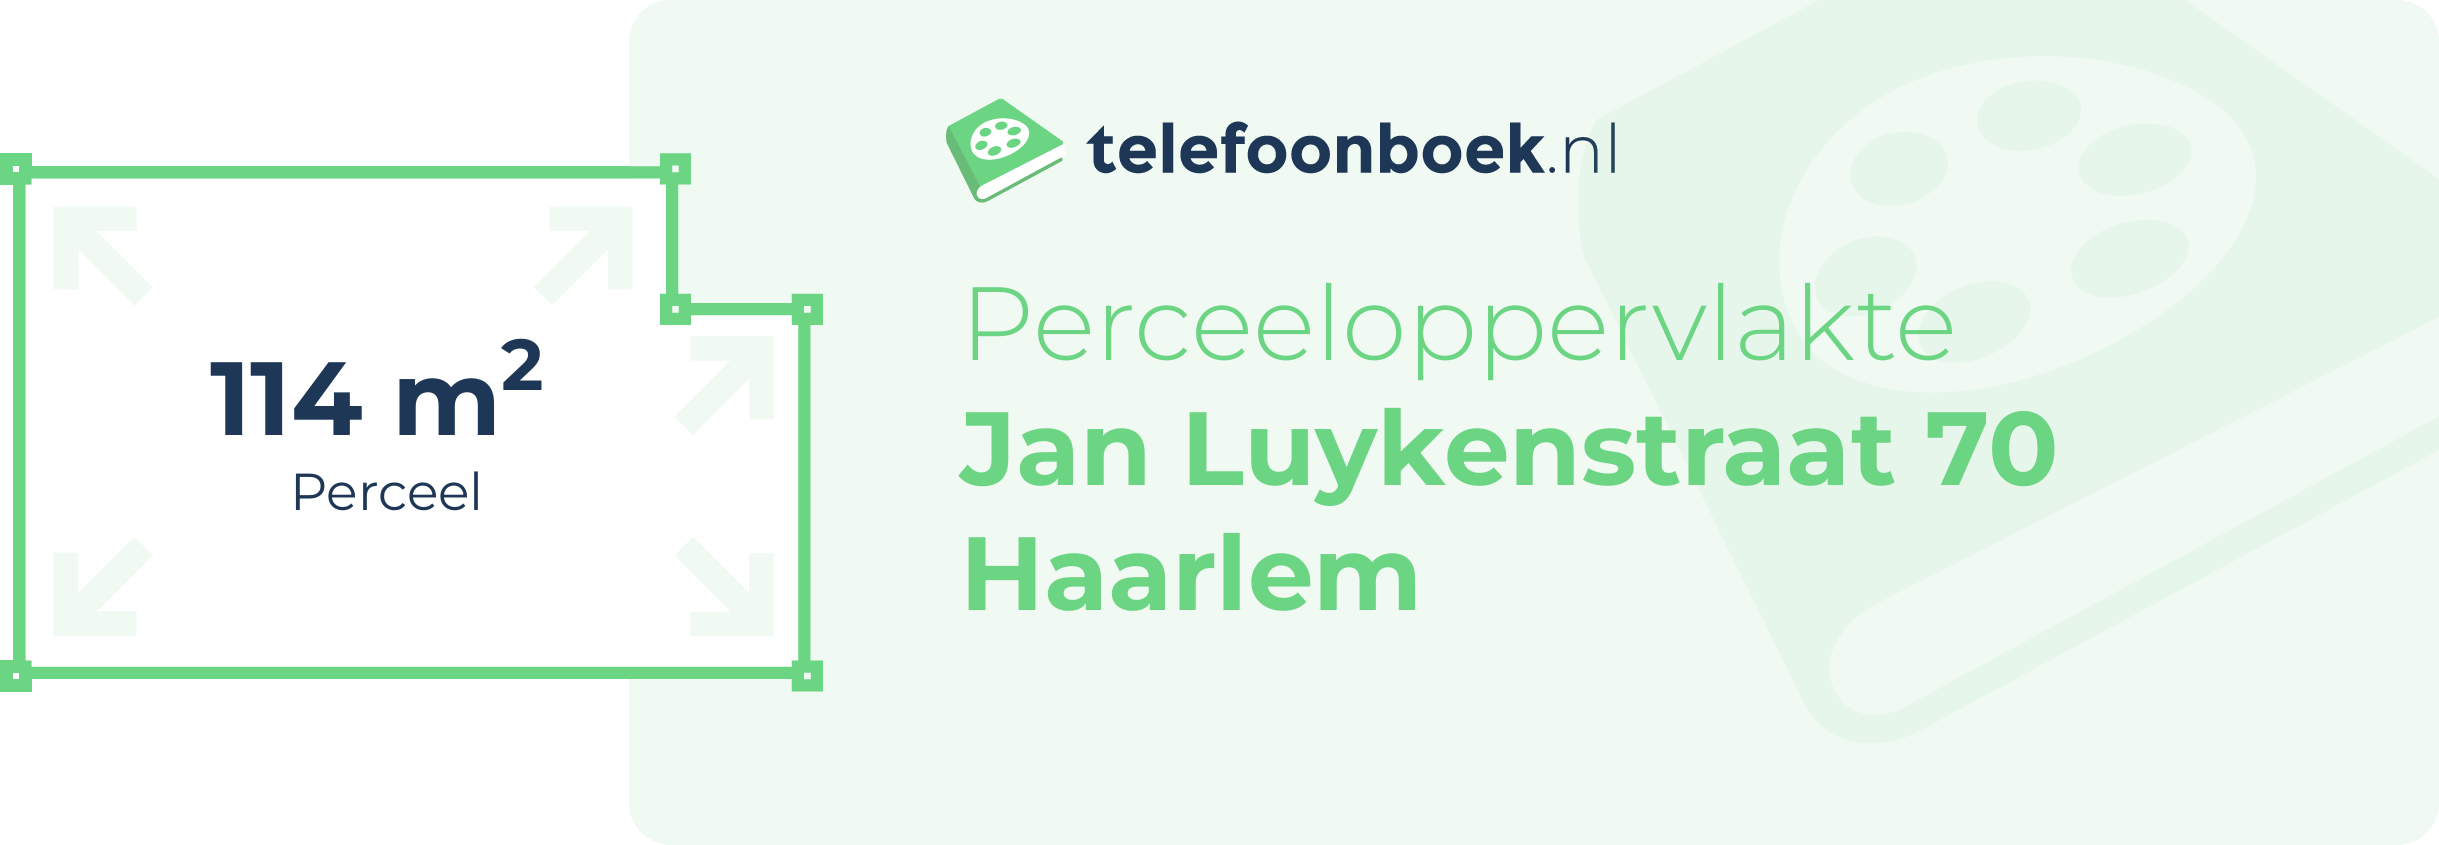 Perceeloppervlakte Jan Luykenstraat 70 Haarlem